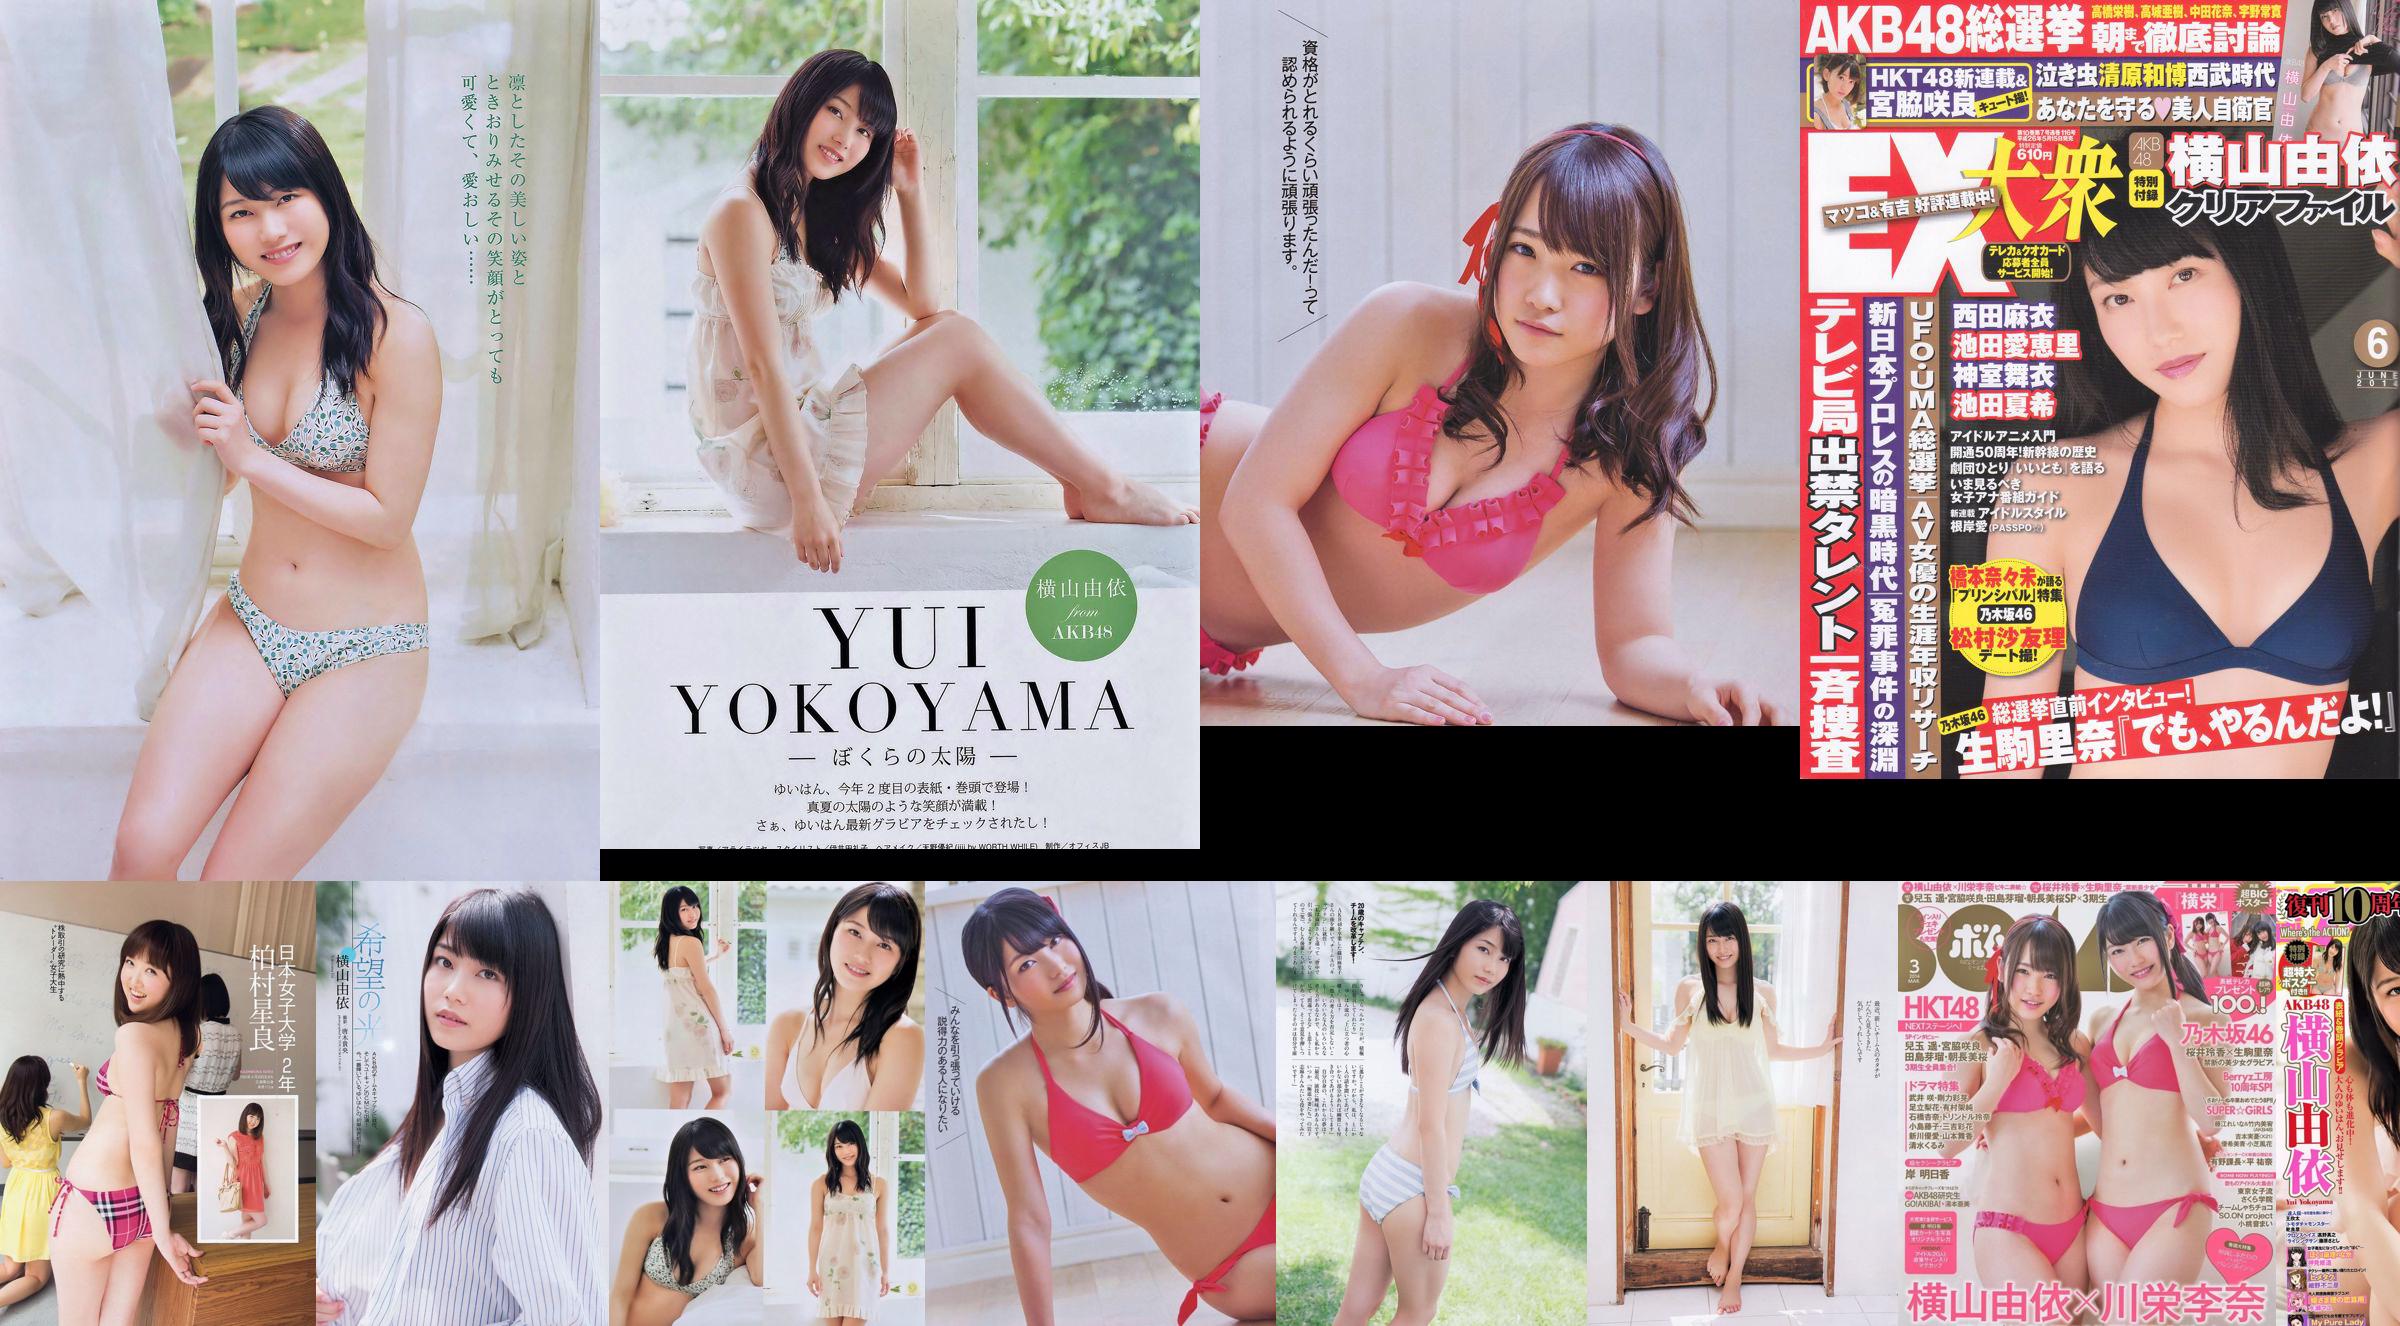 Momoiro Clover Z Yui Yokoyama Yua Shinkawa Mio Uema Anri Sugihara Kumi Yagami [Wekelijkse Playboy] 2013 No.20 Foto Moshi No.02ec63 Pagina 1